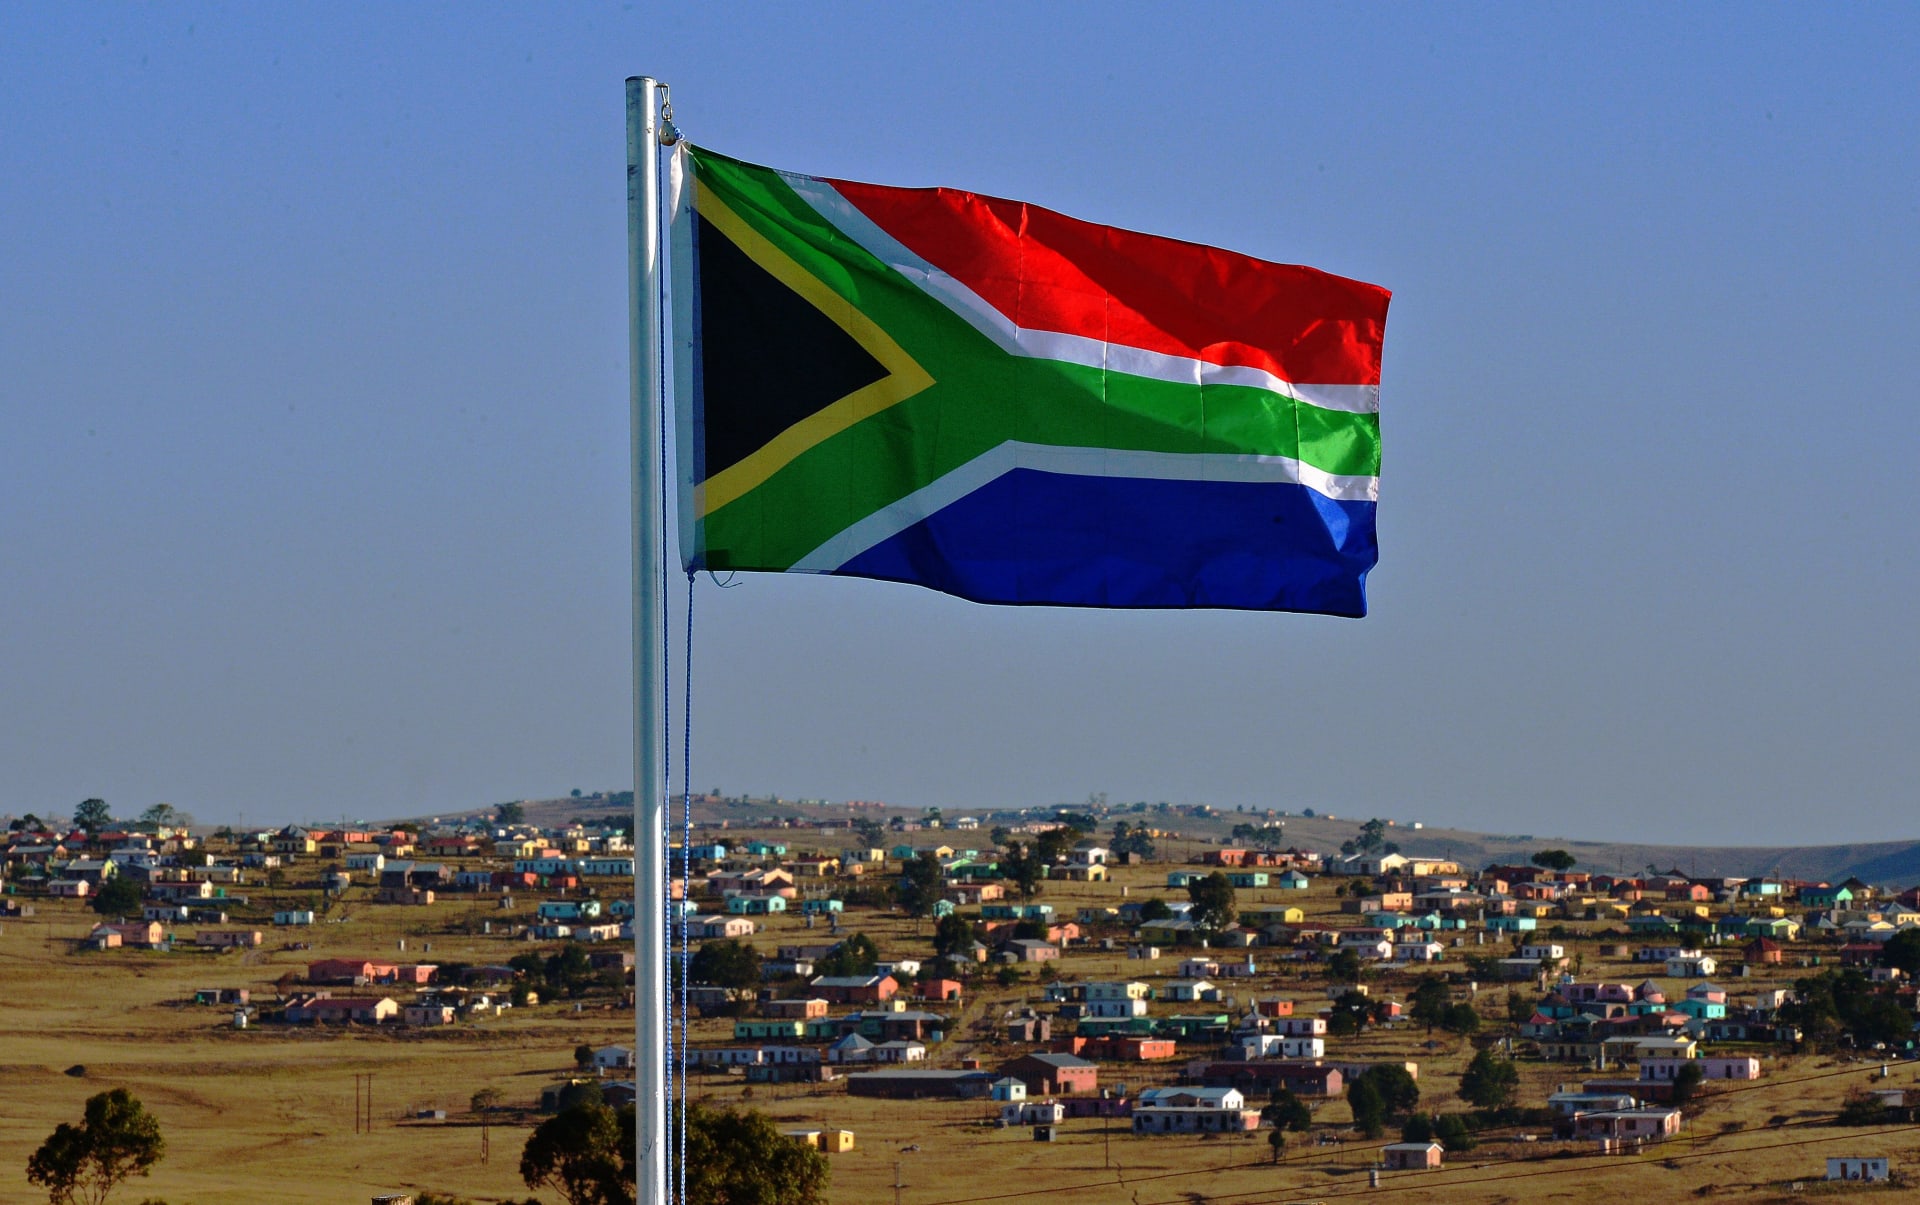  اعتقال مغتصب قاتل هرب من السجن في جنوب أفريقيا مُتهم بتزوير وفاته خارج البلاد